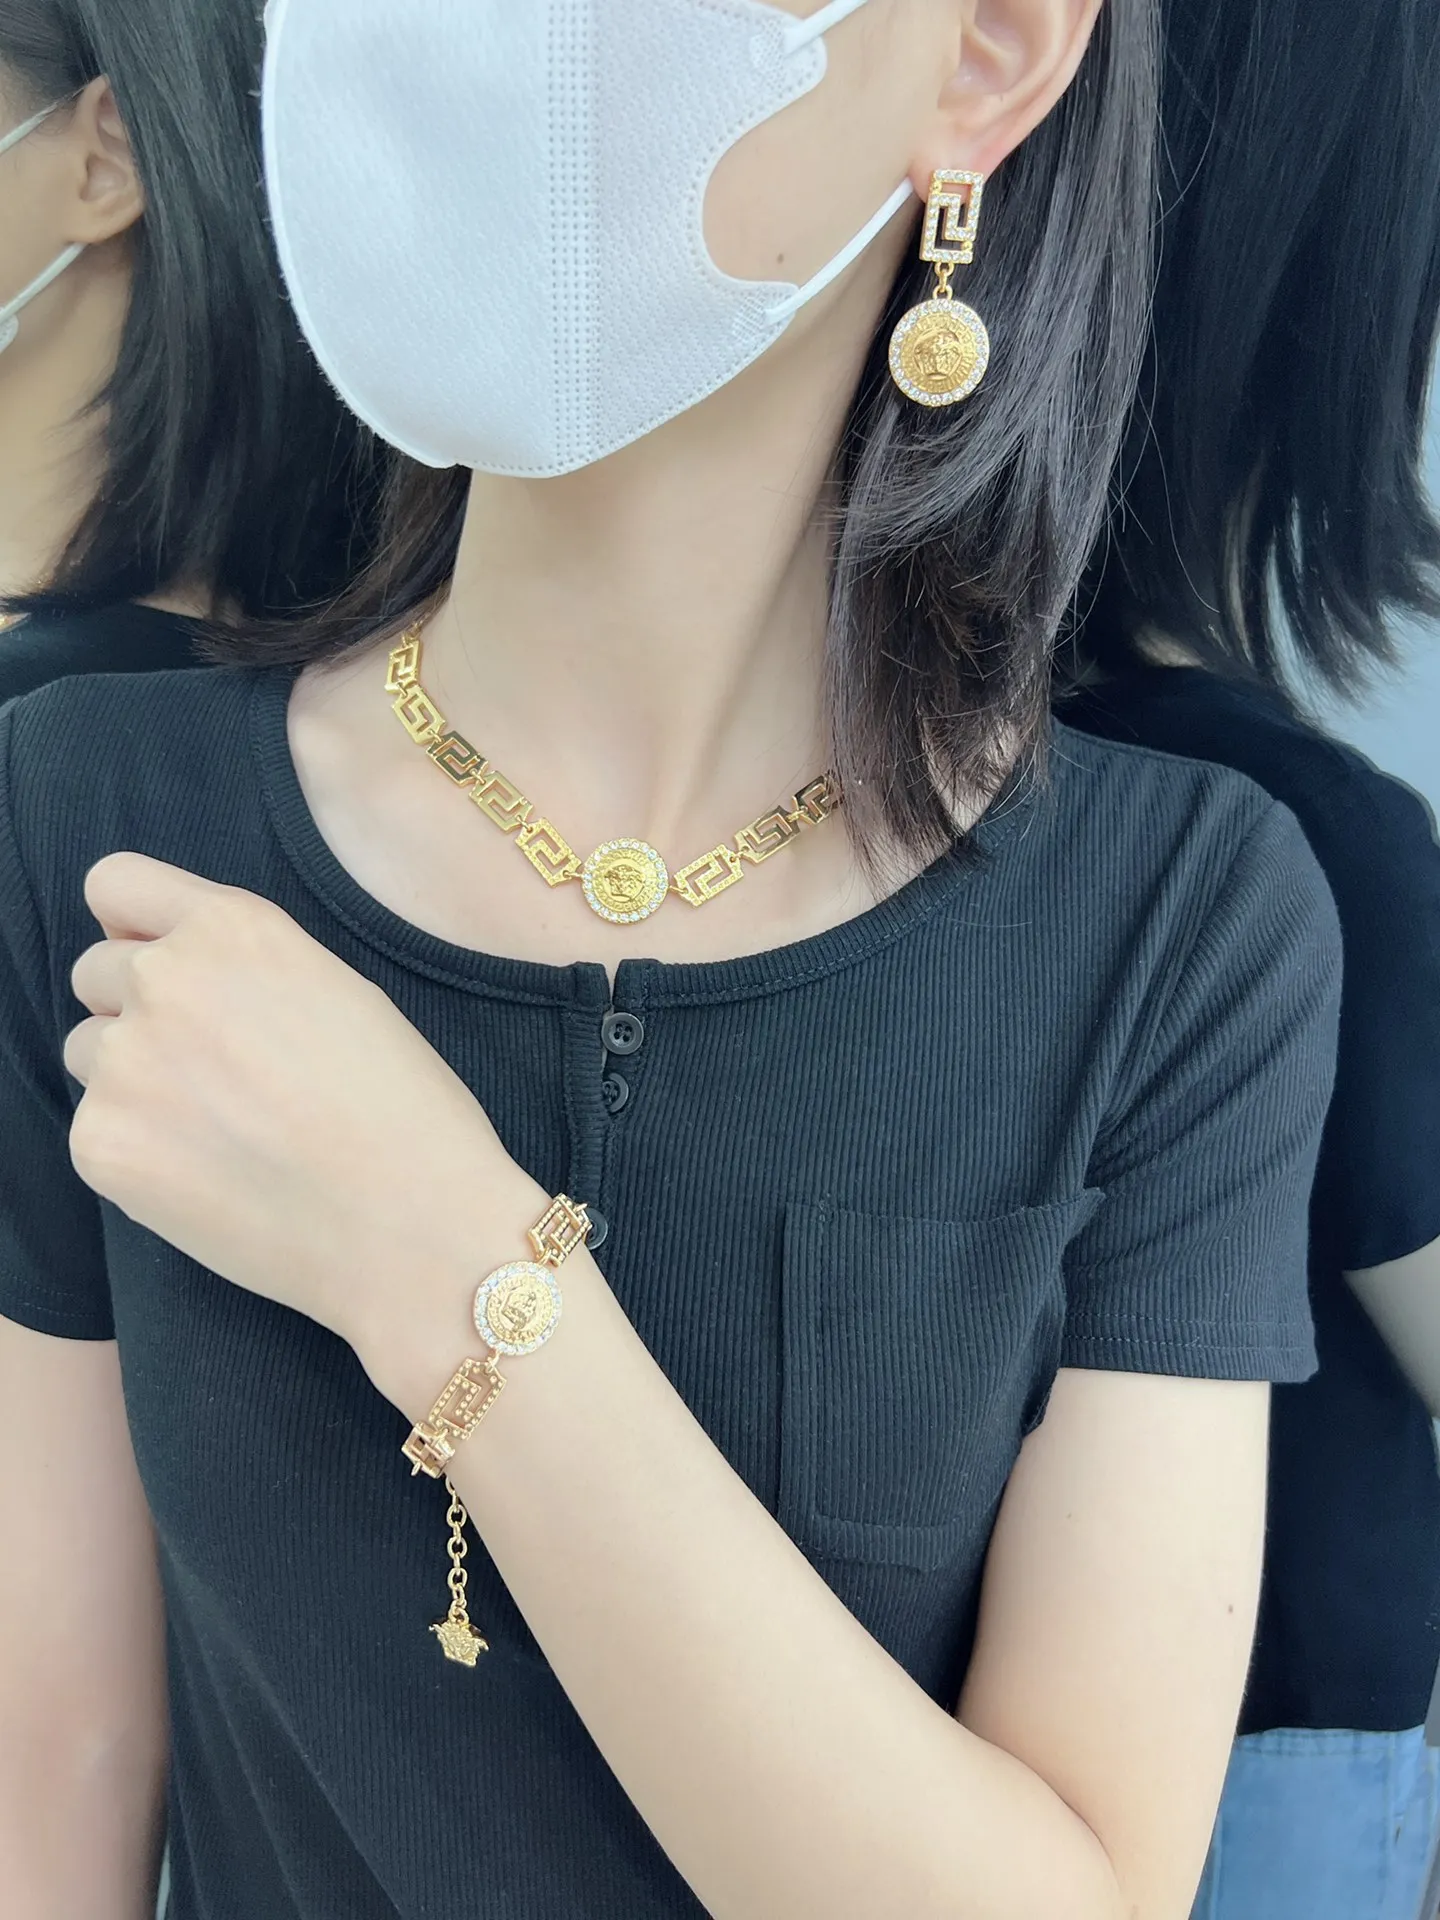 Femme conçue chaîne colliers ras du cou bracelet boucle d'oreille tête de méduse portrait motif pendentif femmes bijoux ensemble Banshee 18 carats p299j